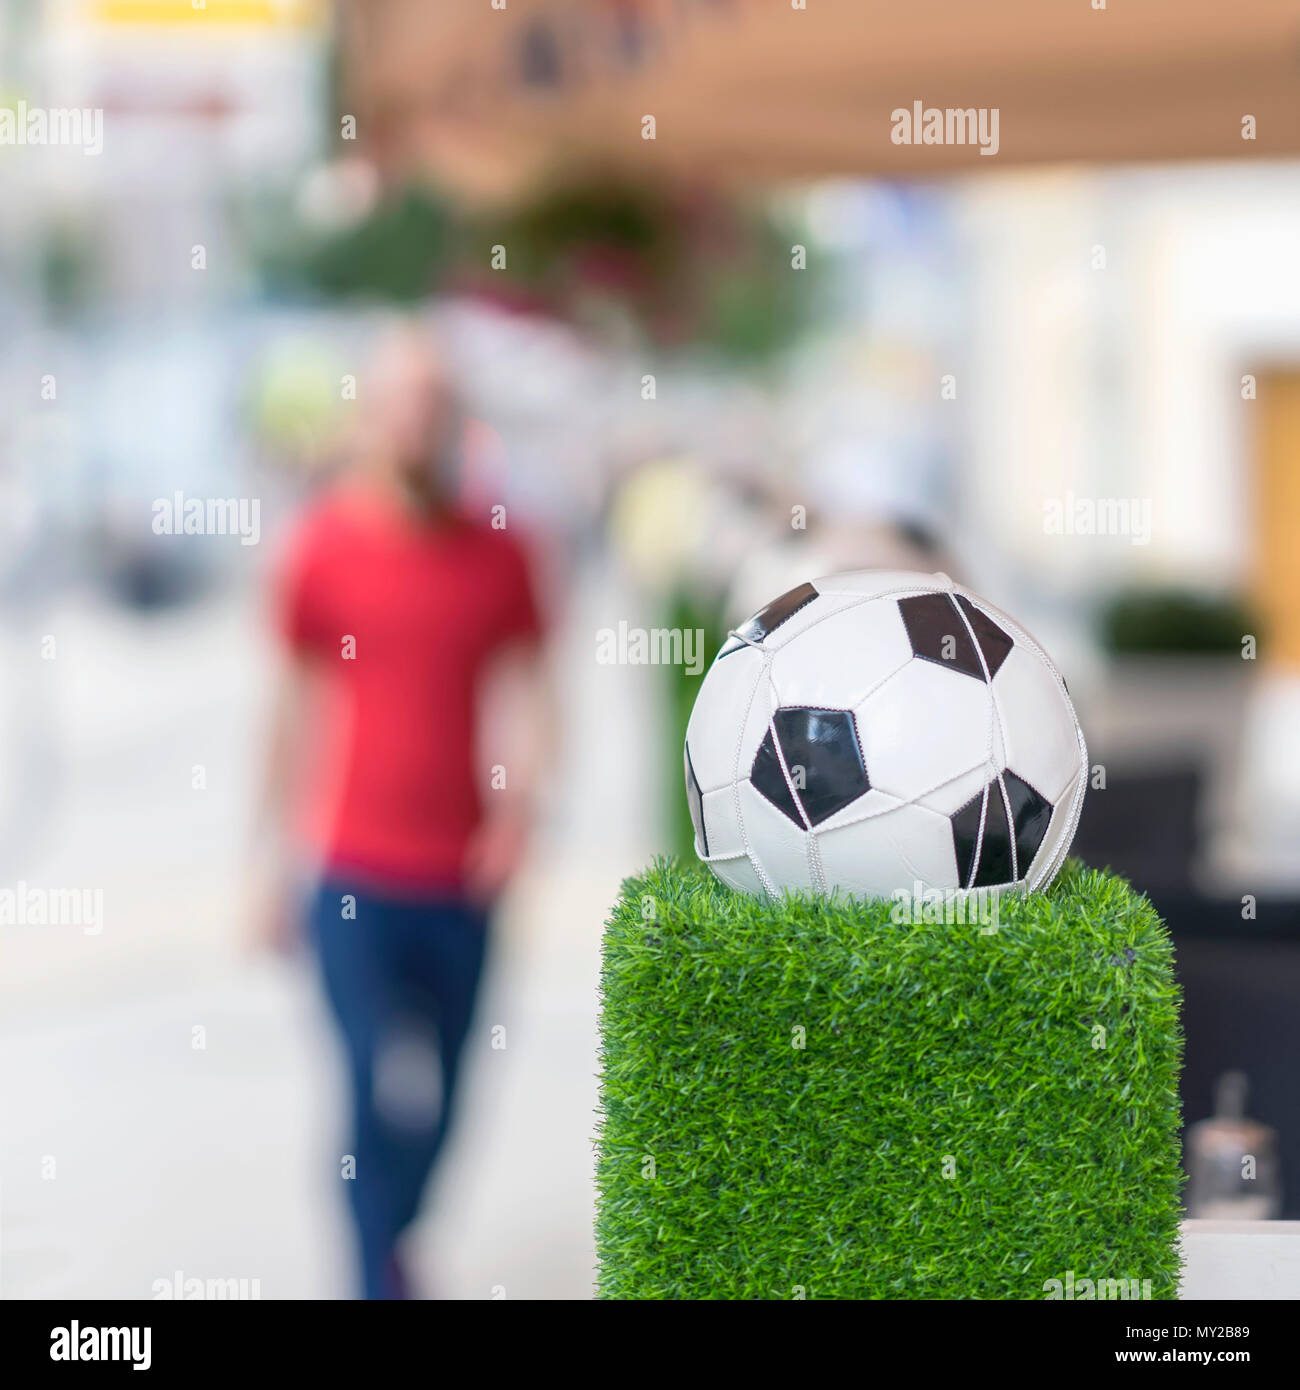 Stand de décoration sous la forme de la balle de football classique dans le filet sur l'herbe verte. Ornements des rues de la ville. L'homme trouble en rouge. Focu sélective Banque D'Images